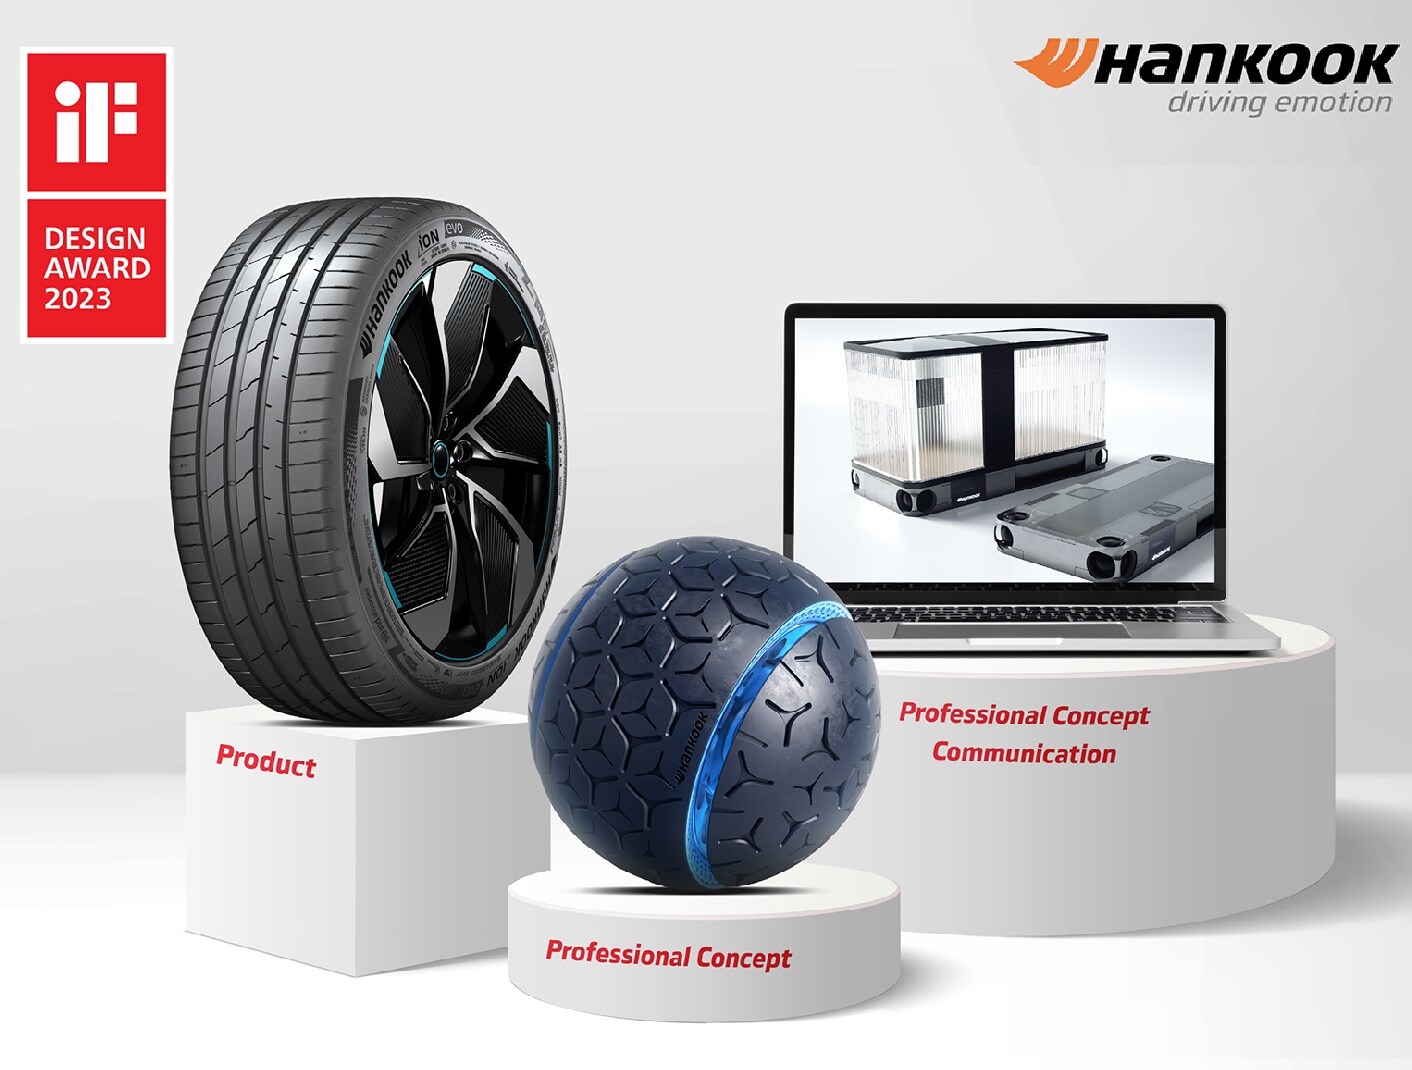 La excelencia en tecnología y diseño de Hankook Tire reconocida en el iF Design Award 2023.